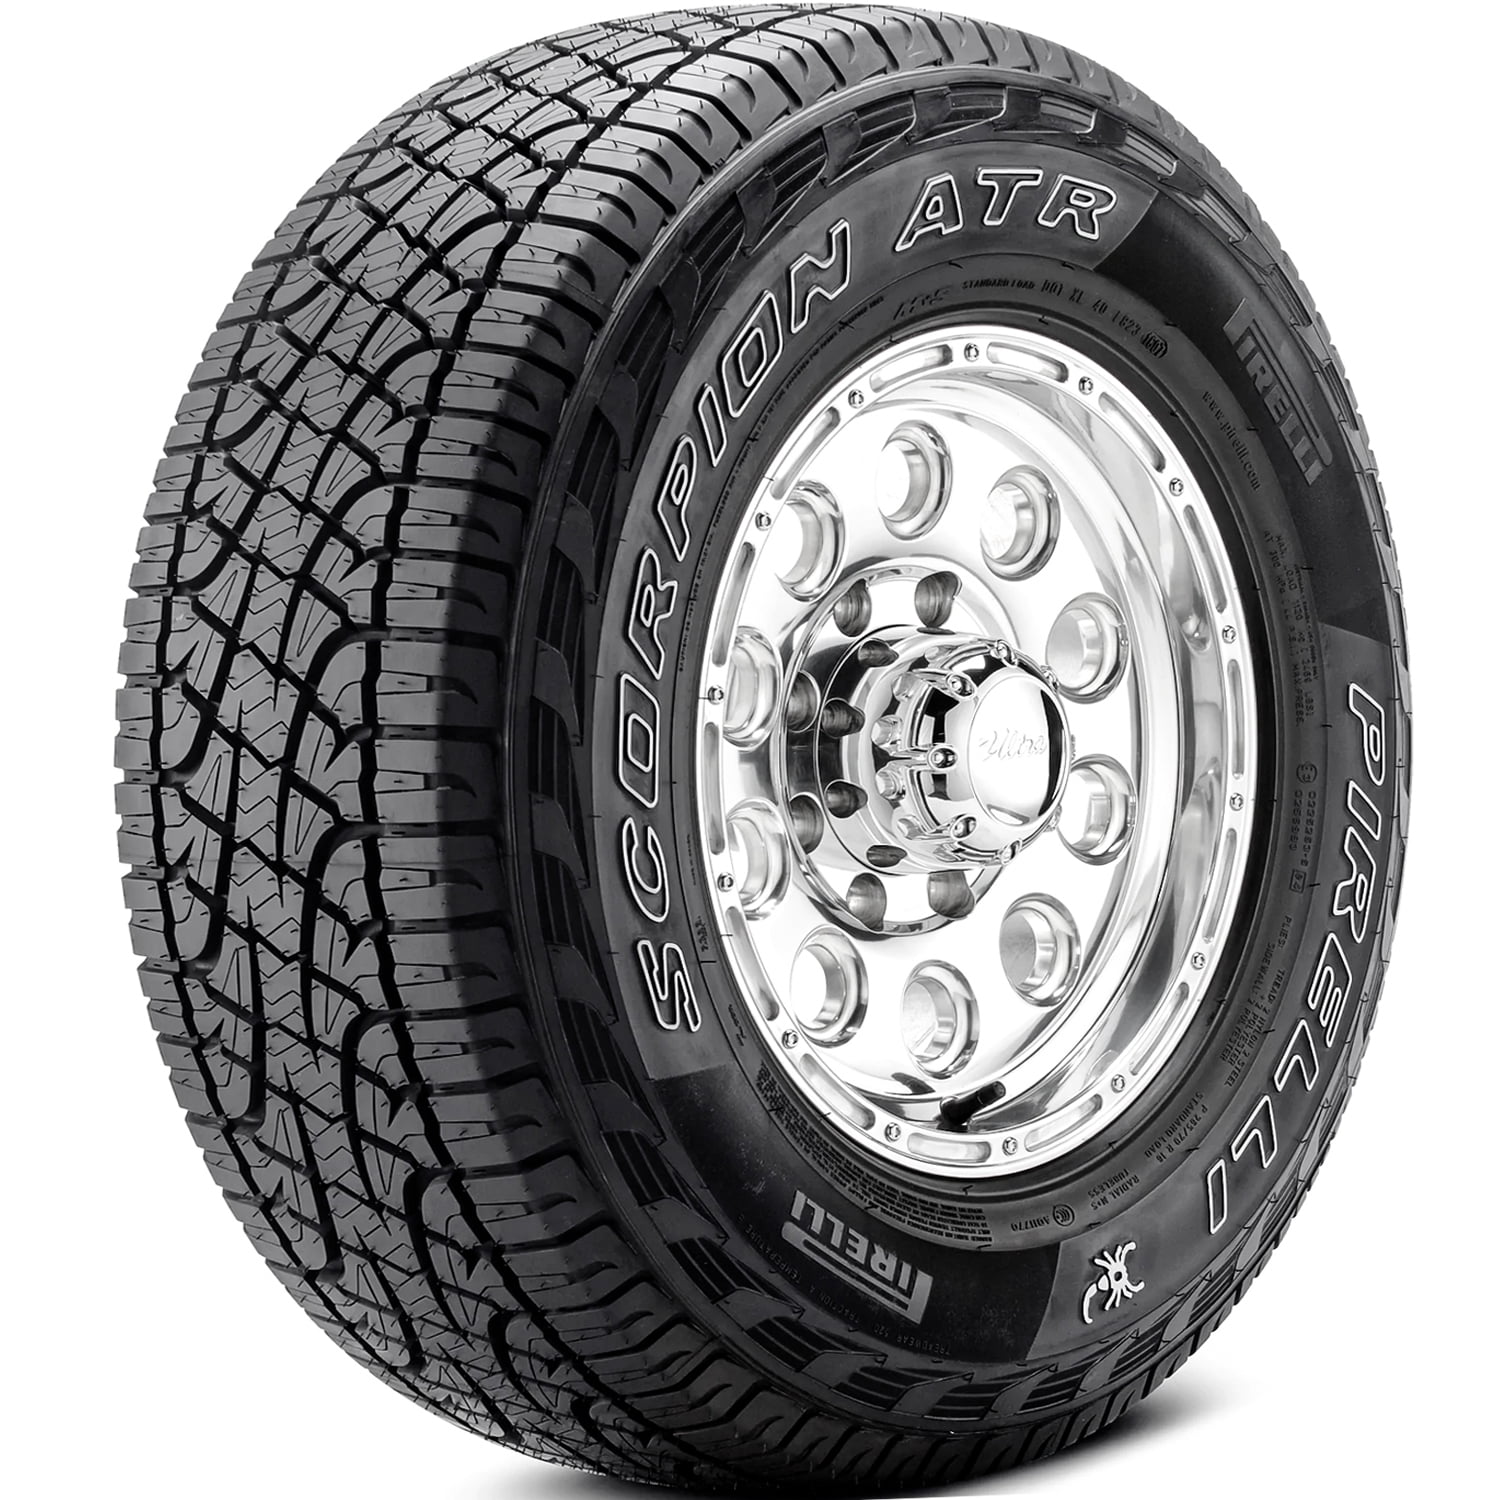 pirelli-scorpion-atr-light-truck-275-55r20-111-s-tire-walmart